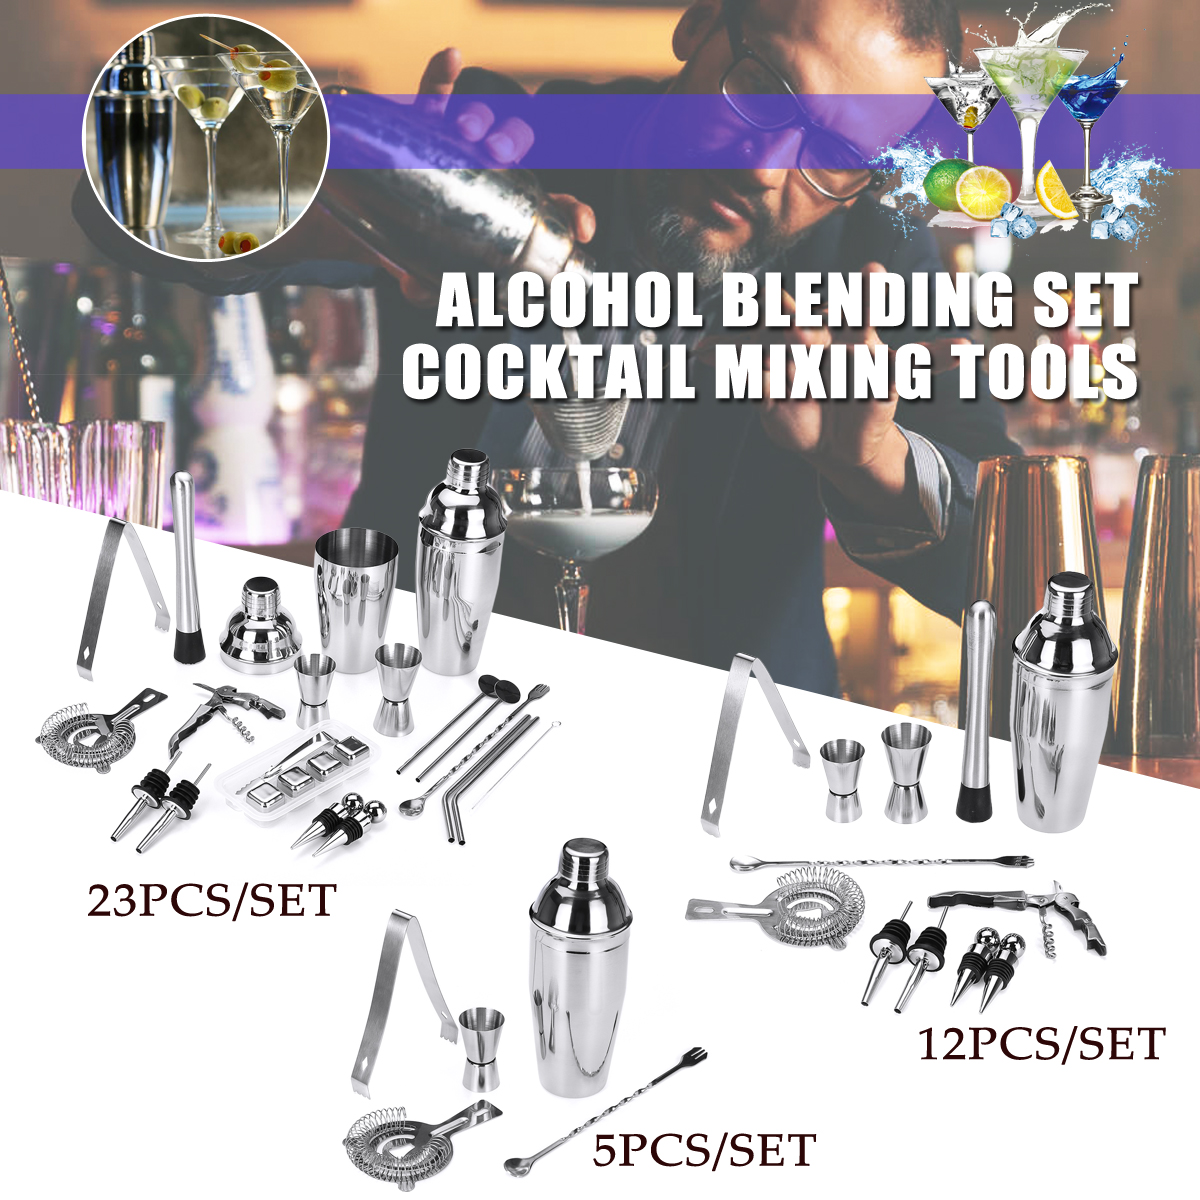 22PCS-Cocktail-Xixing-Tool-Alcohol-Blending-Set-Cocktail-Mixing-Tools-Cocktail-Shaker--Cocktail-Set-1587205-4